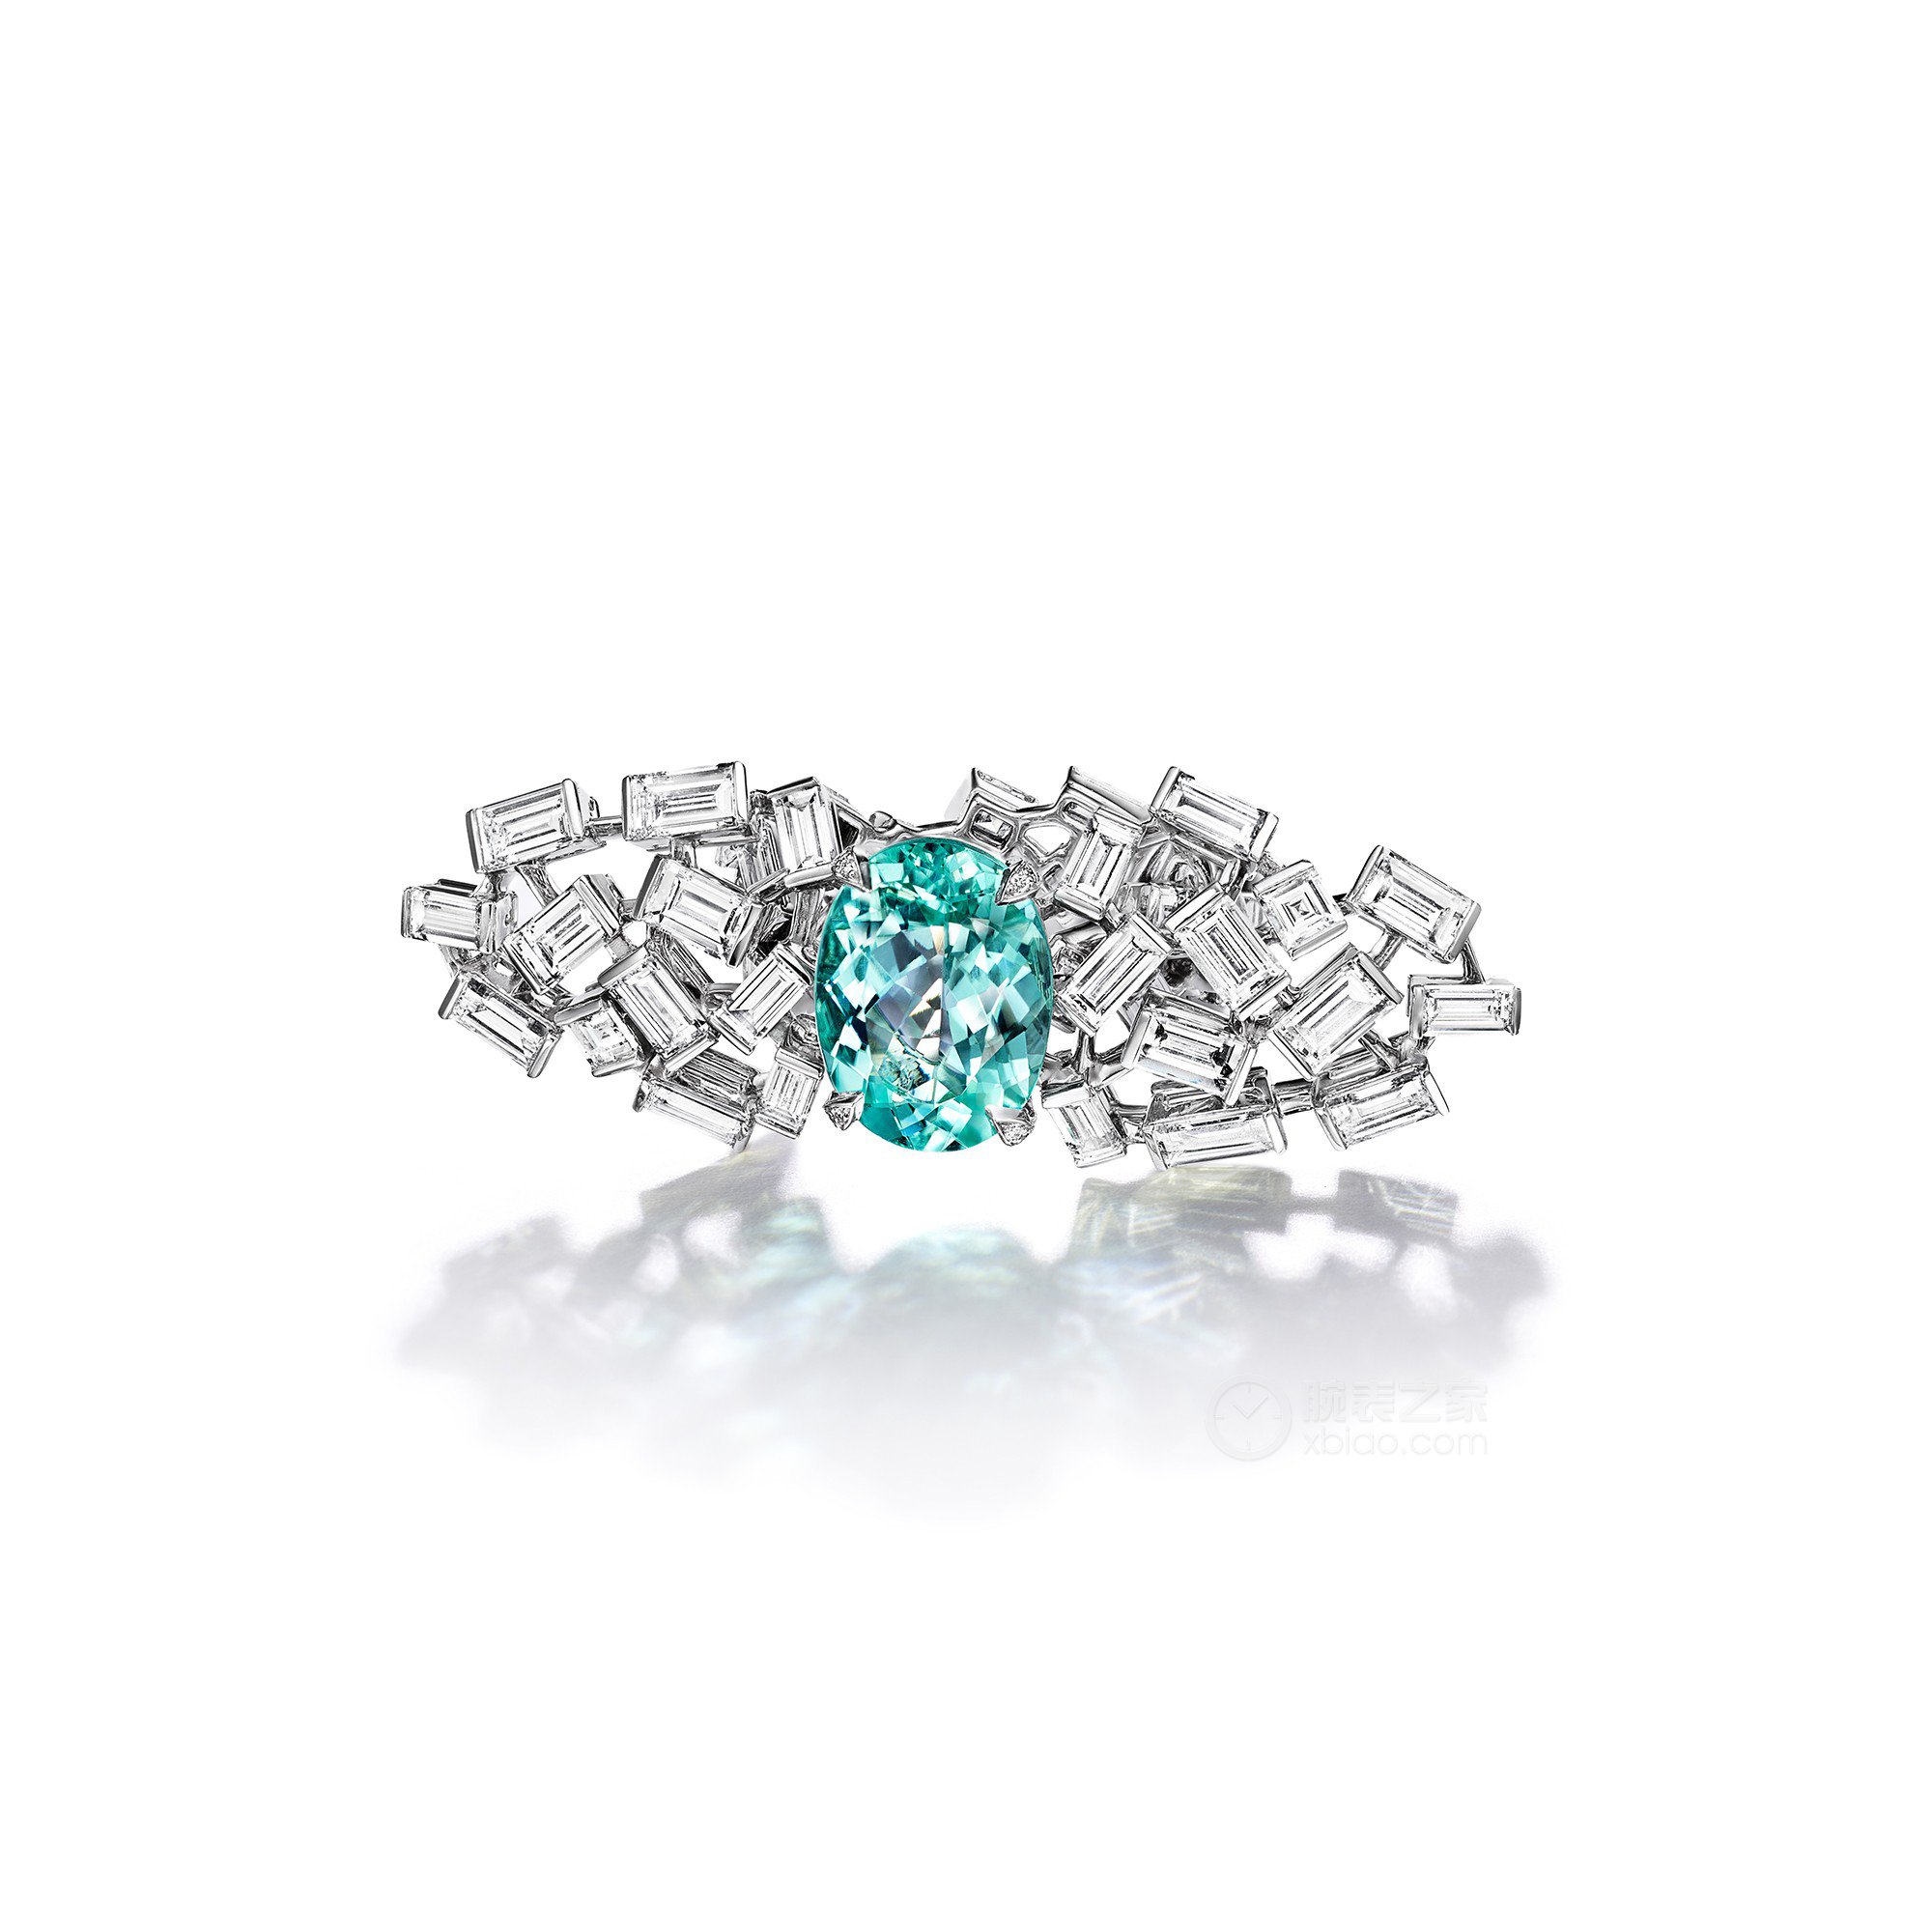 蒂芙尼BLUE BOOK高级珠宝18K白金镶嵌一颗重逾4克拉的蓝色铜锂碧玺及钻石戒指戒指